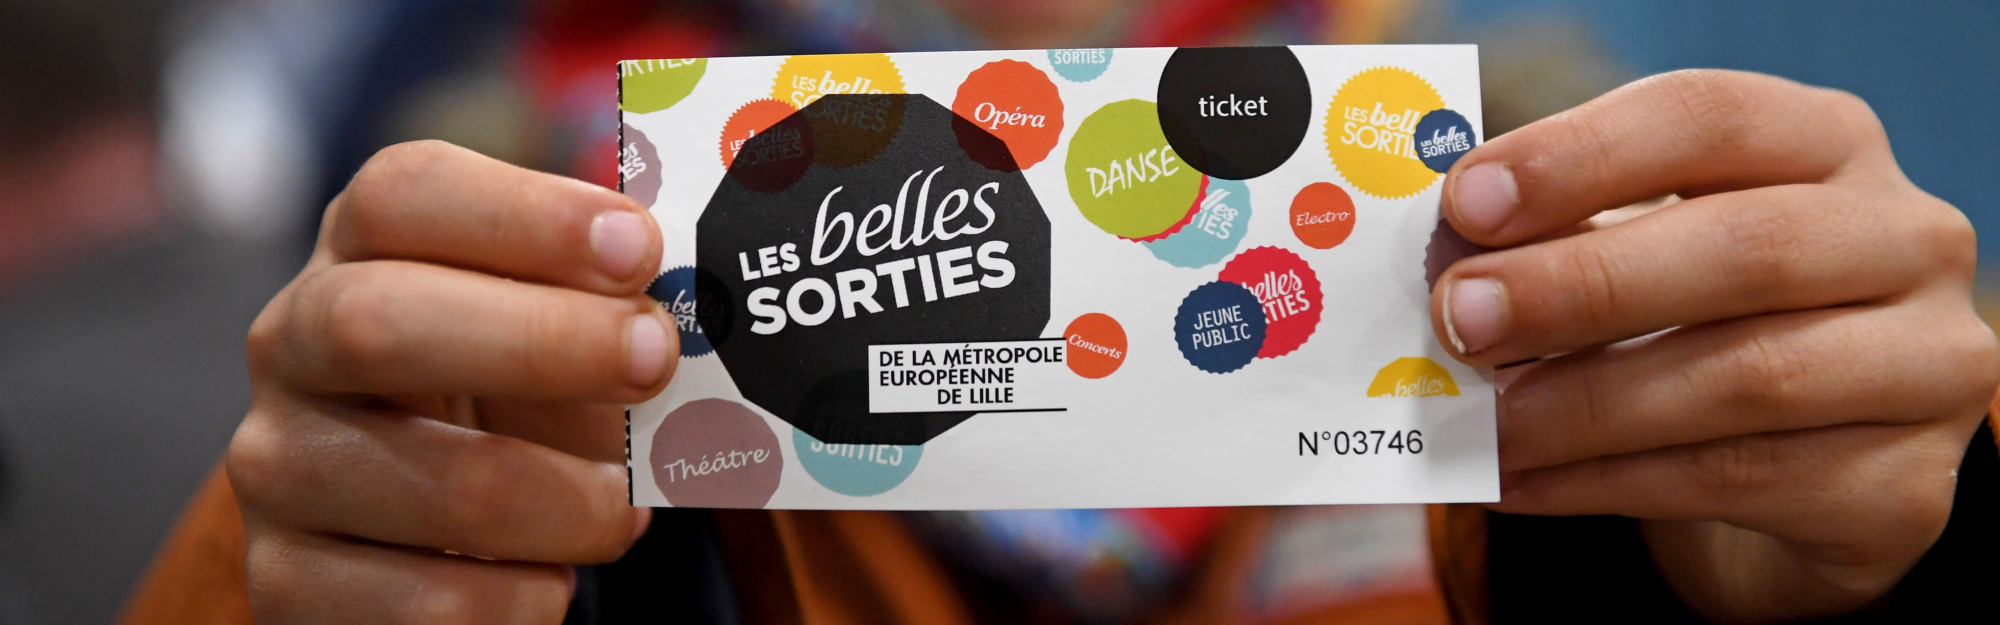 Les Belles Sorties, dispositif culturel de la Métropole Européenne de Lille fête son 10ème anniversaire avec une programmation exceptionnelle